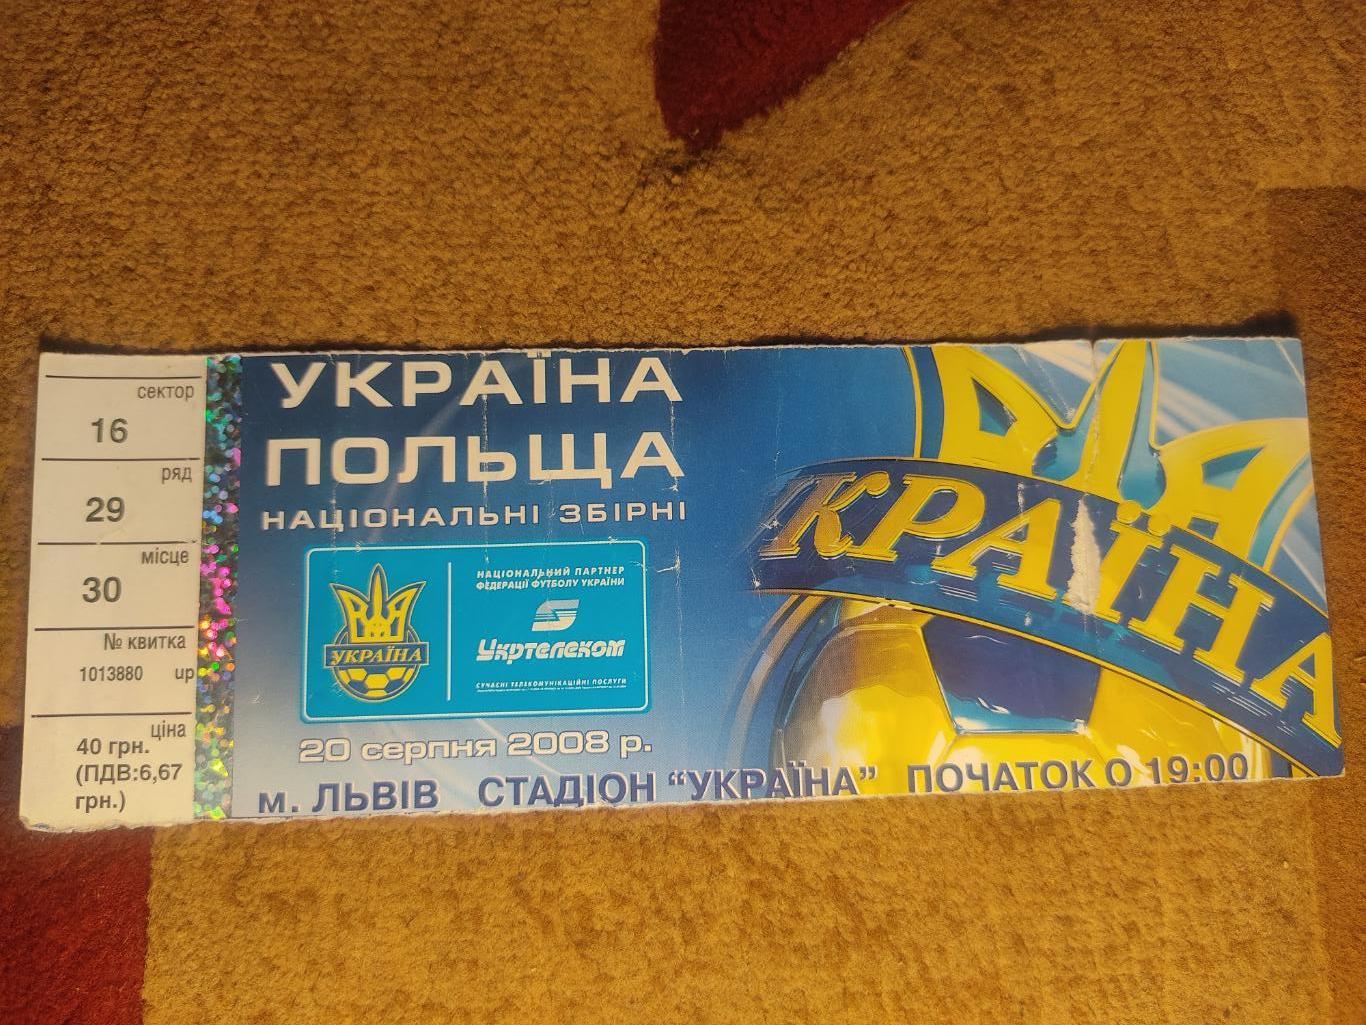 Украина-Польша 20.08.08